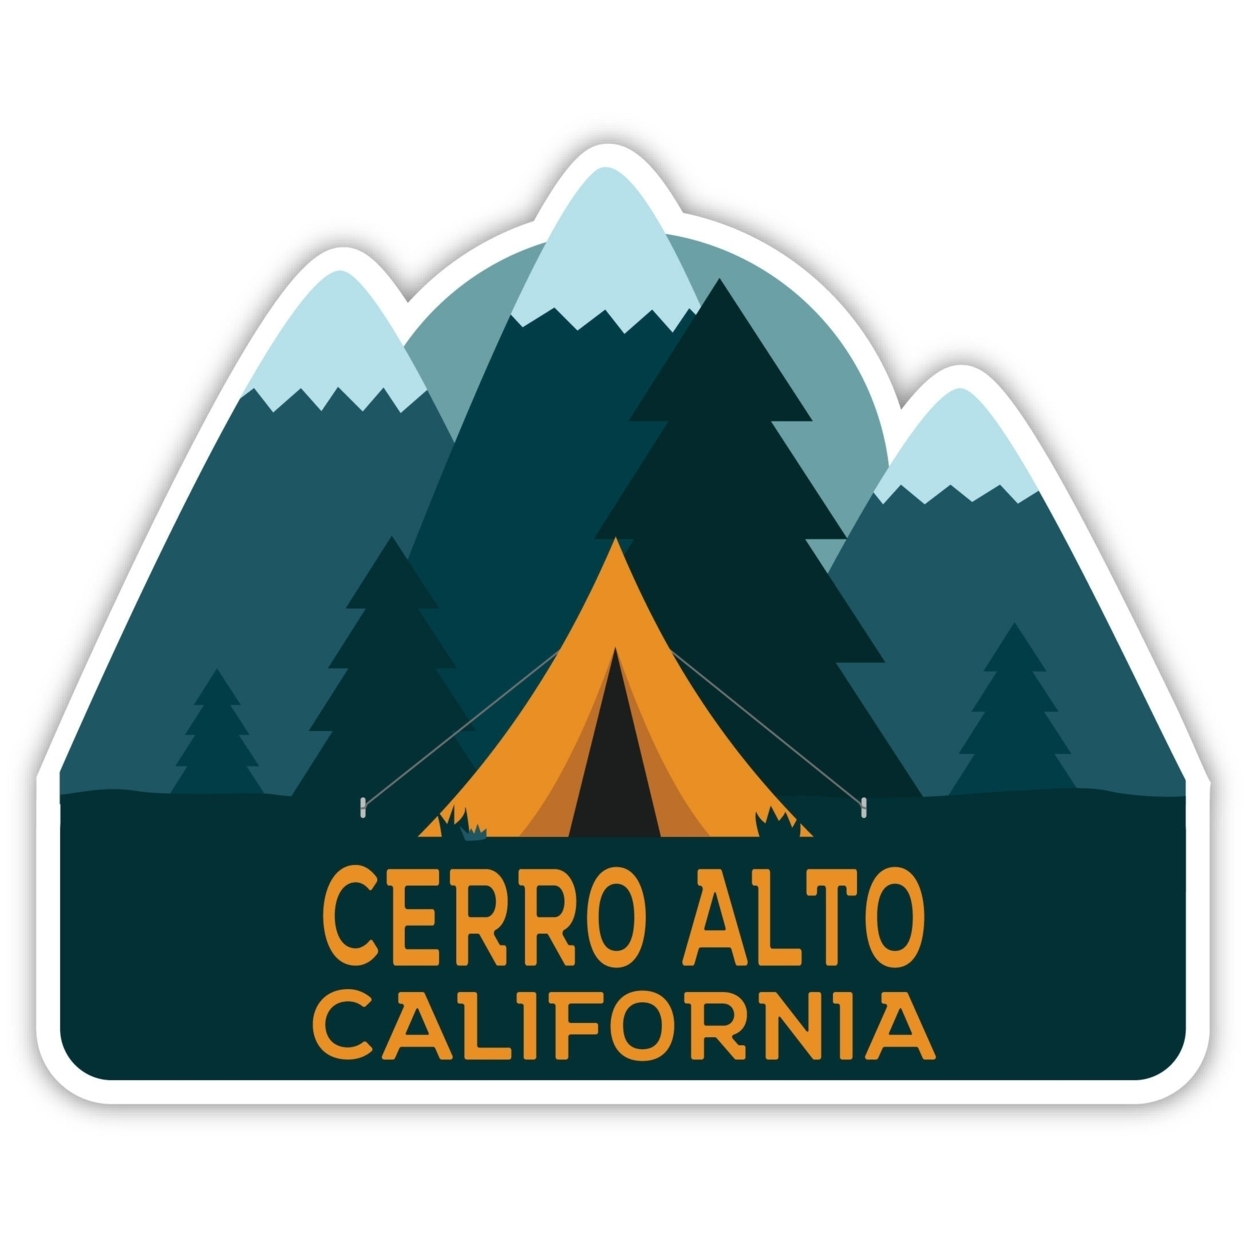 Cerro Alto California Souvenir Decorative Stickers (Choose Theme And Size) - Single Unit, 12-Inch, Tent